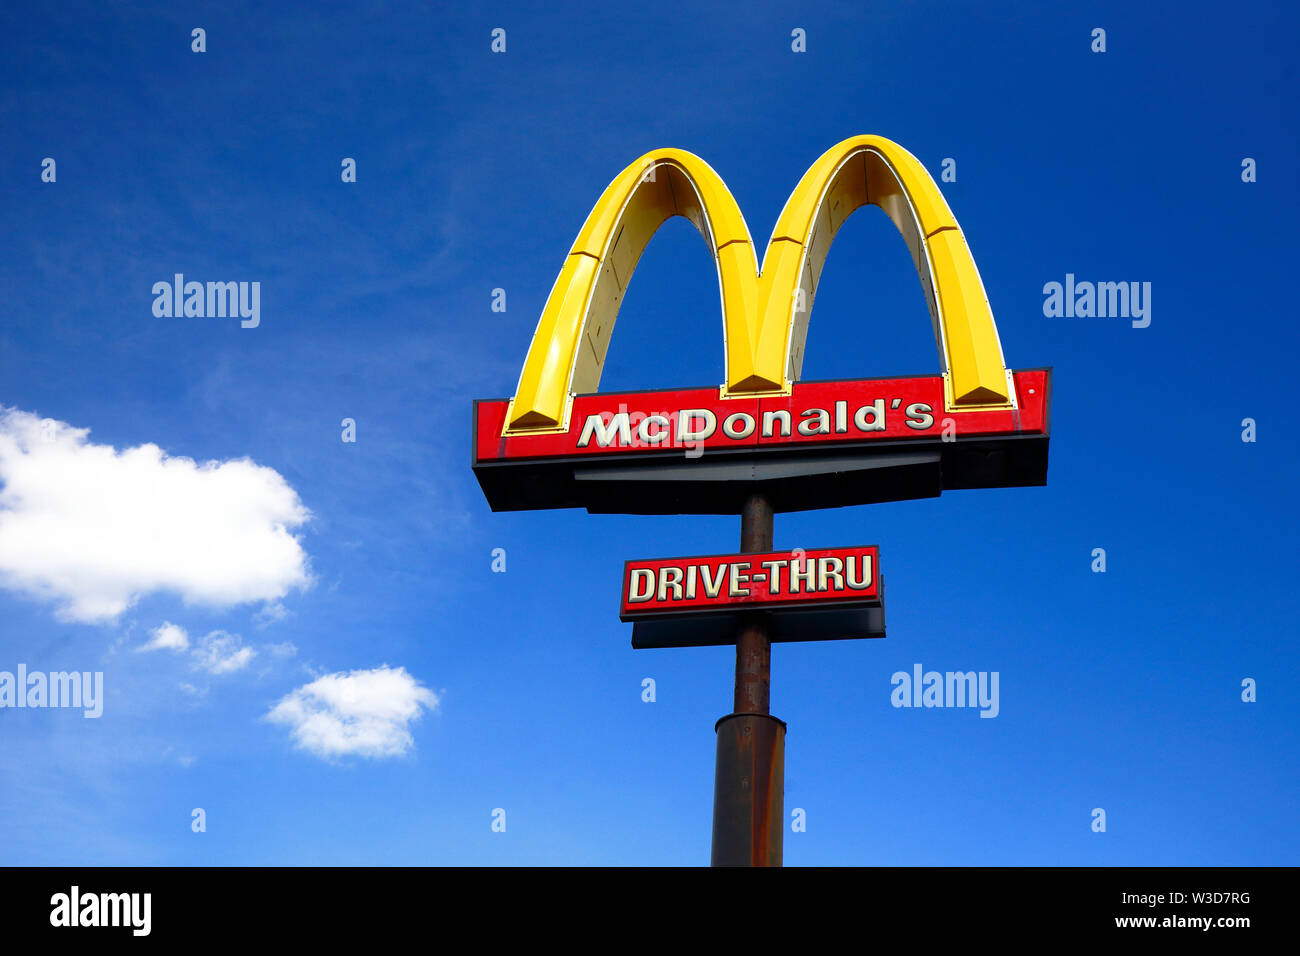 McDonalds Arches d'or against a blue sky Banque D'Images